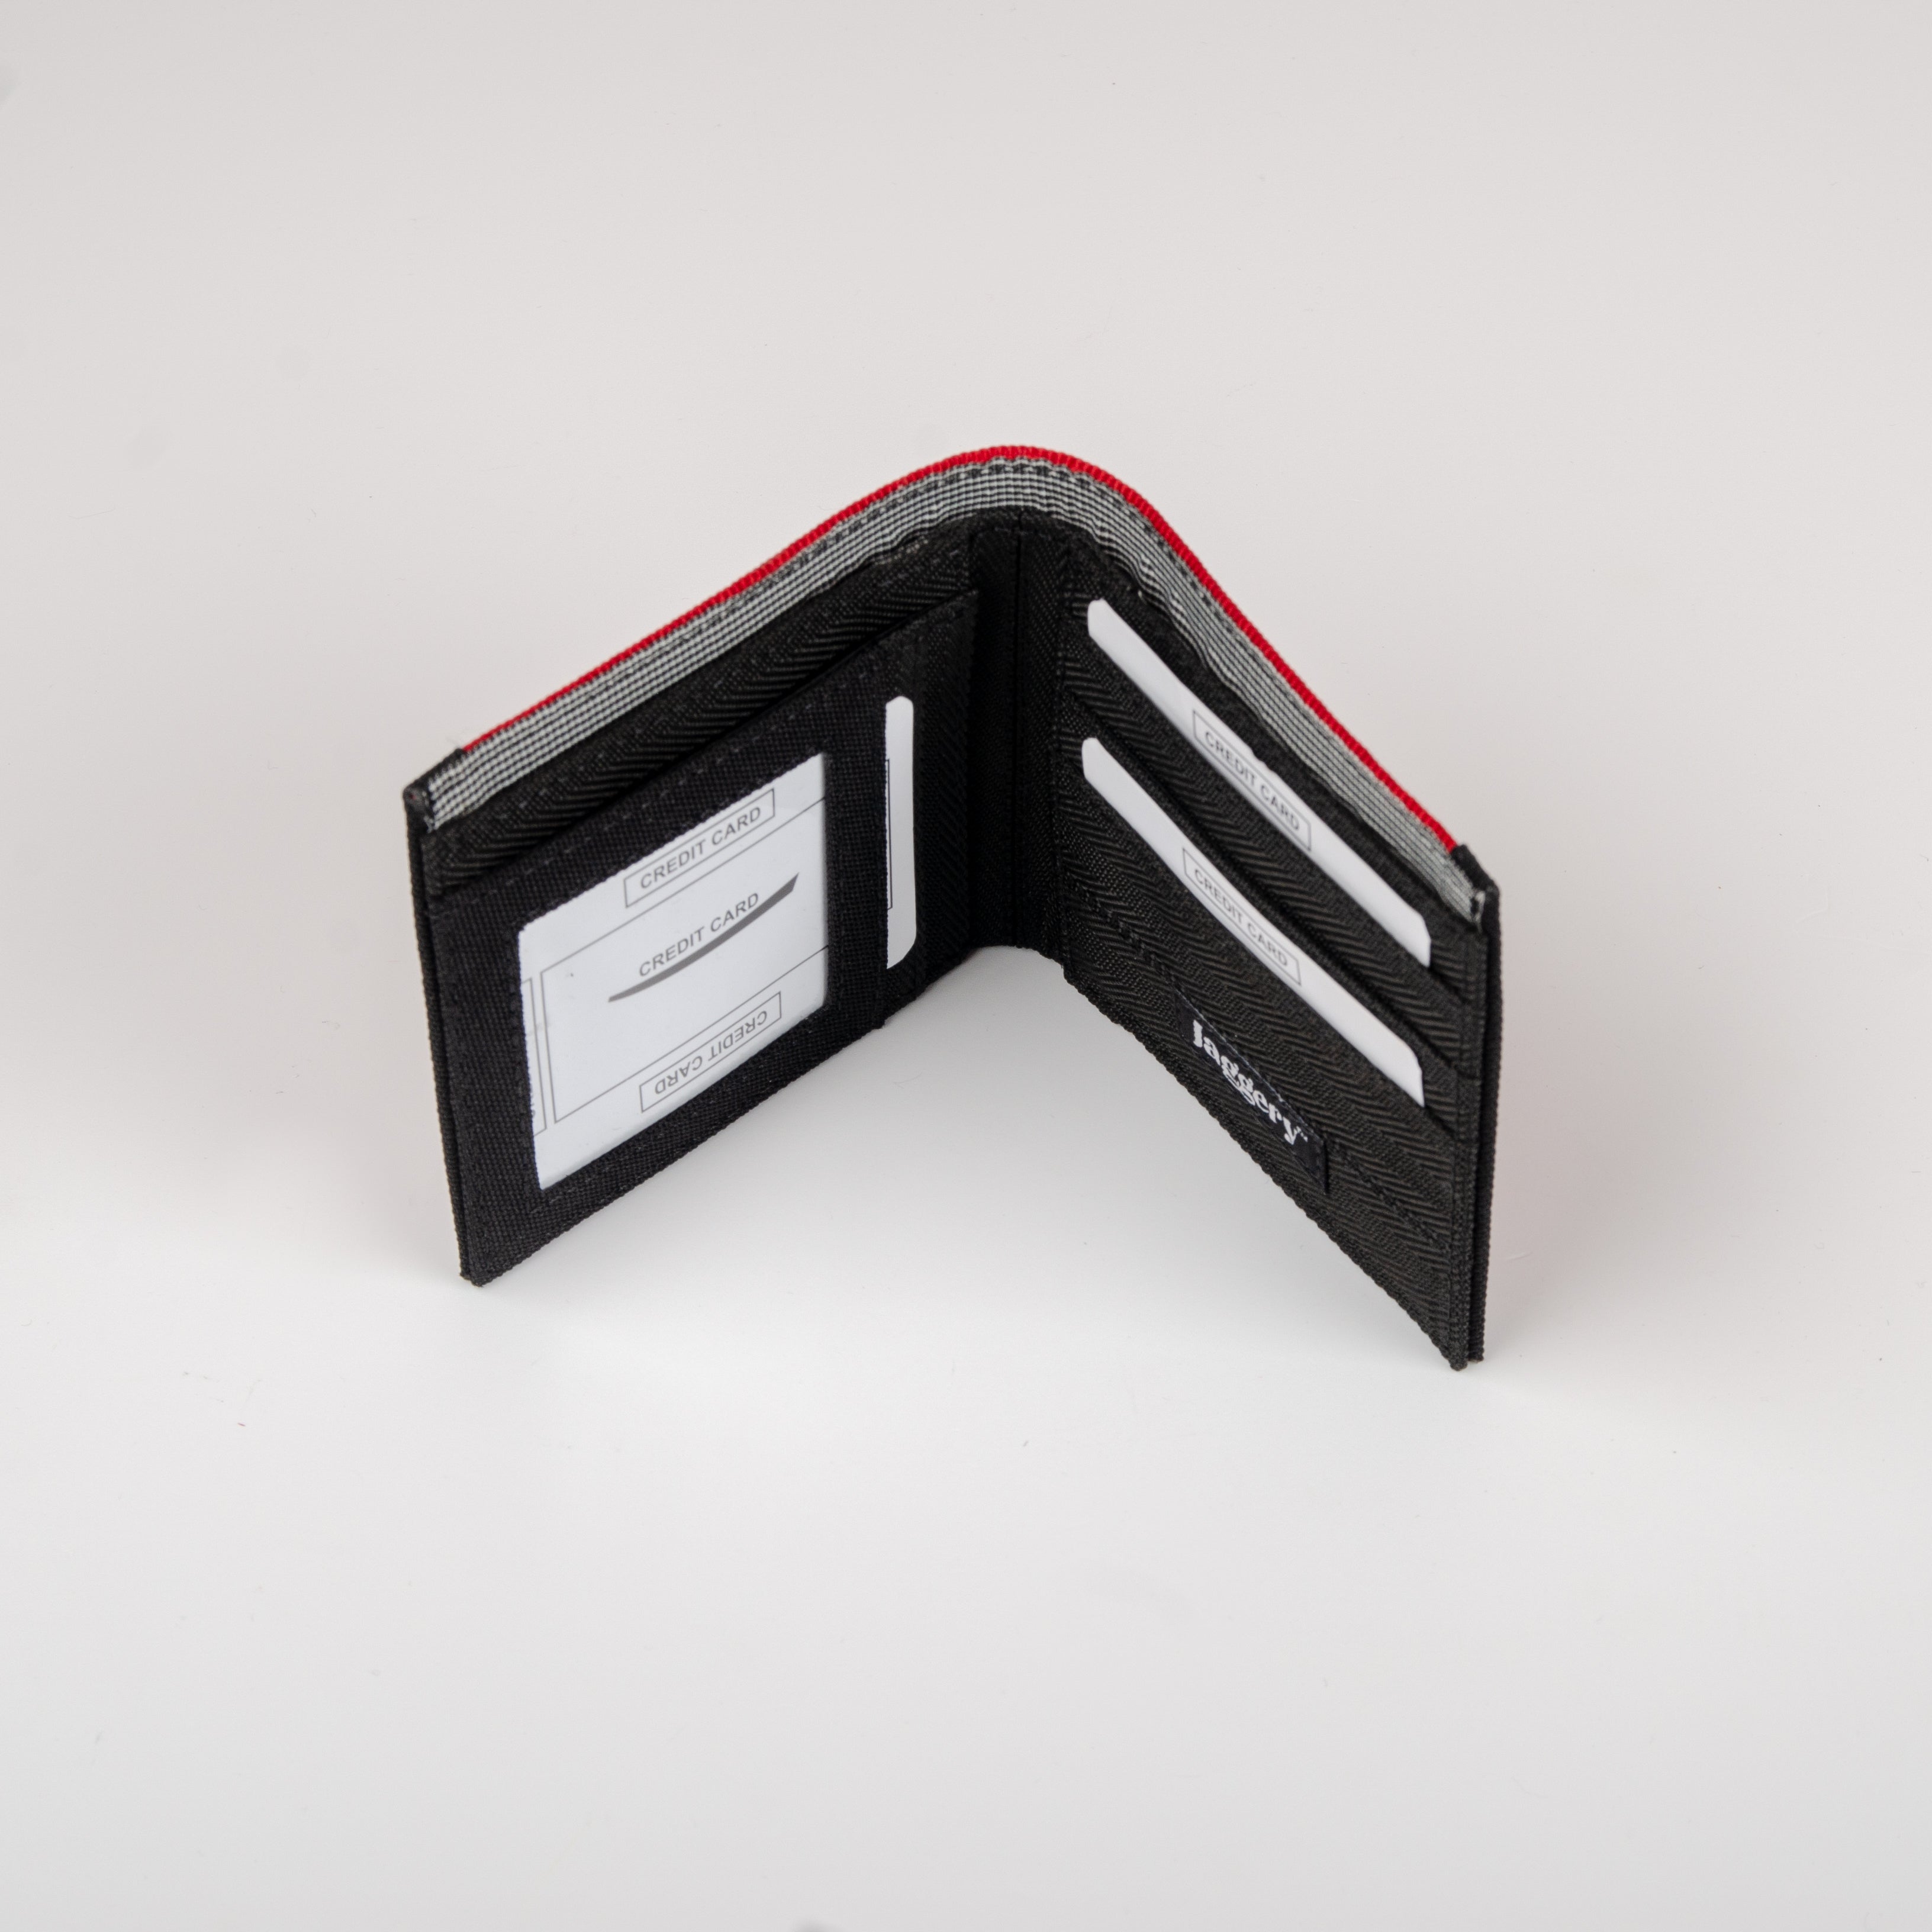 Wallet in Red Belts